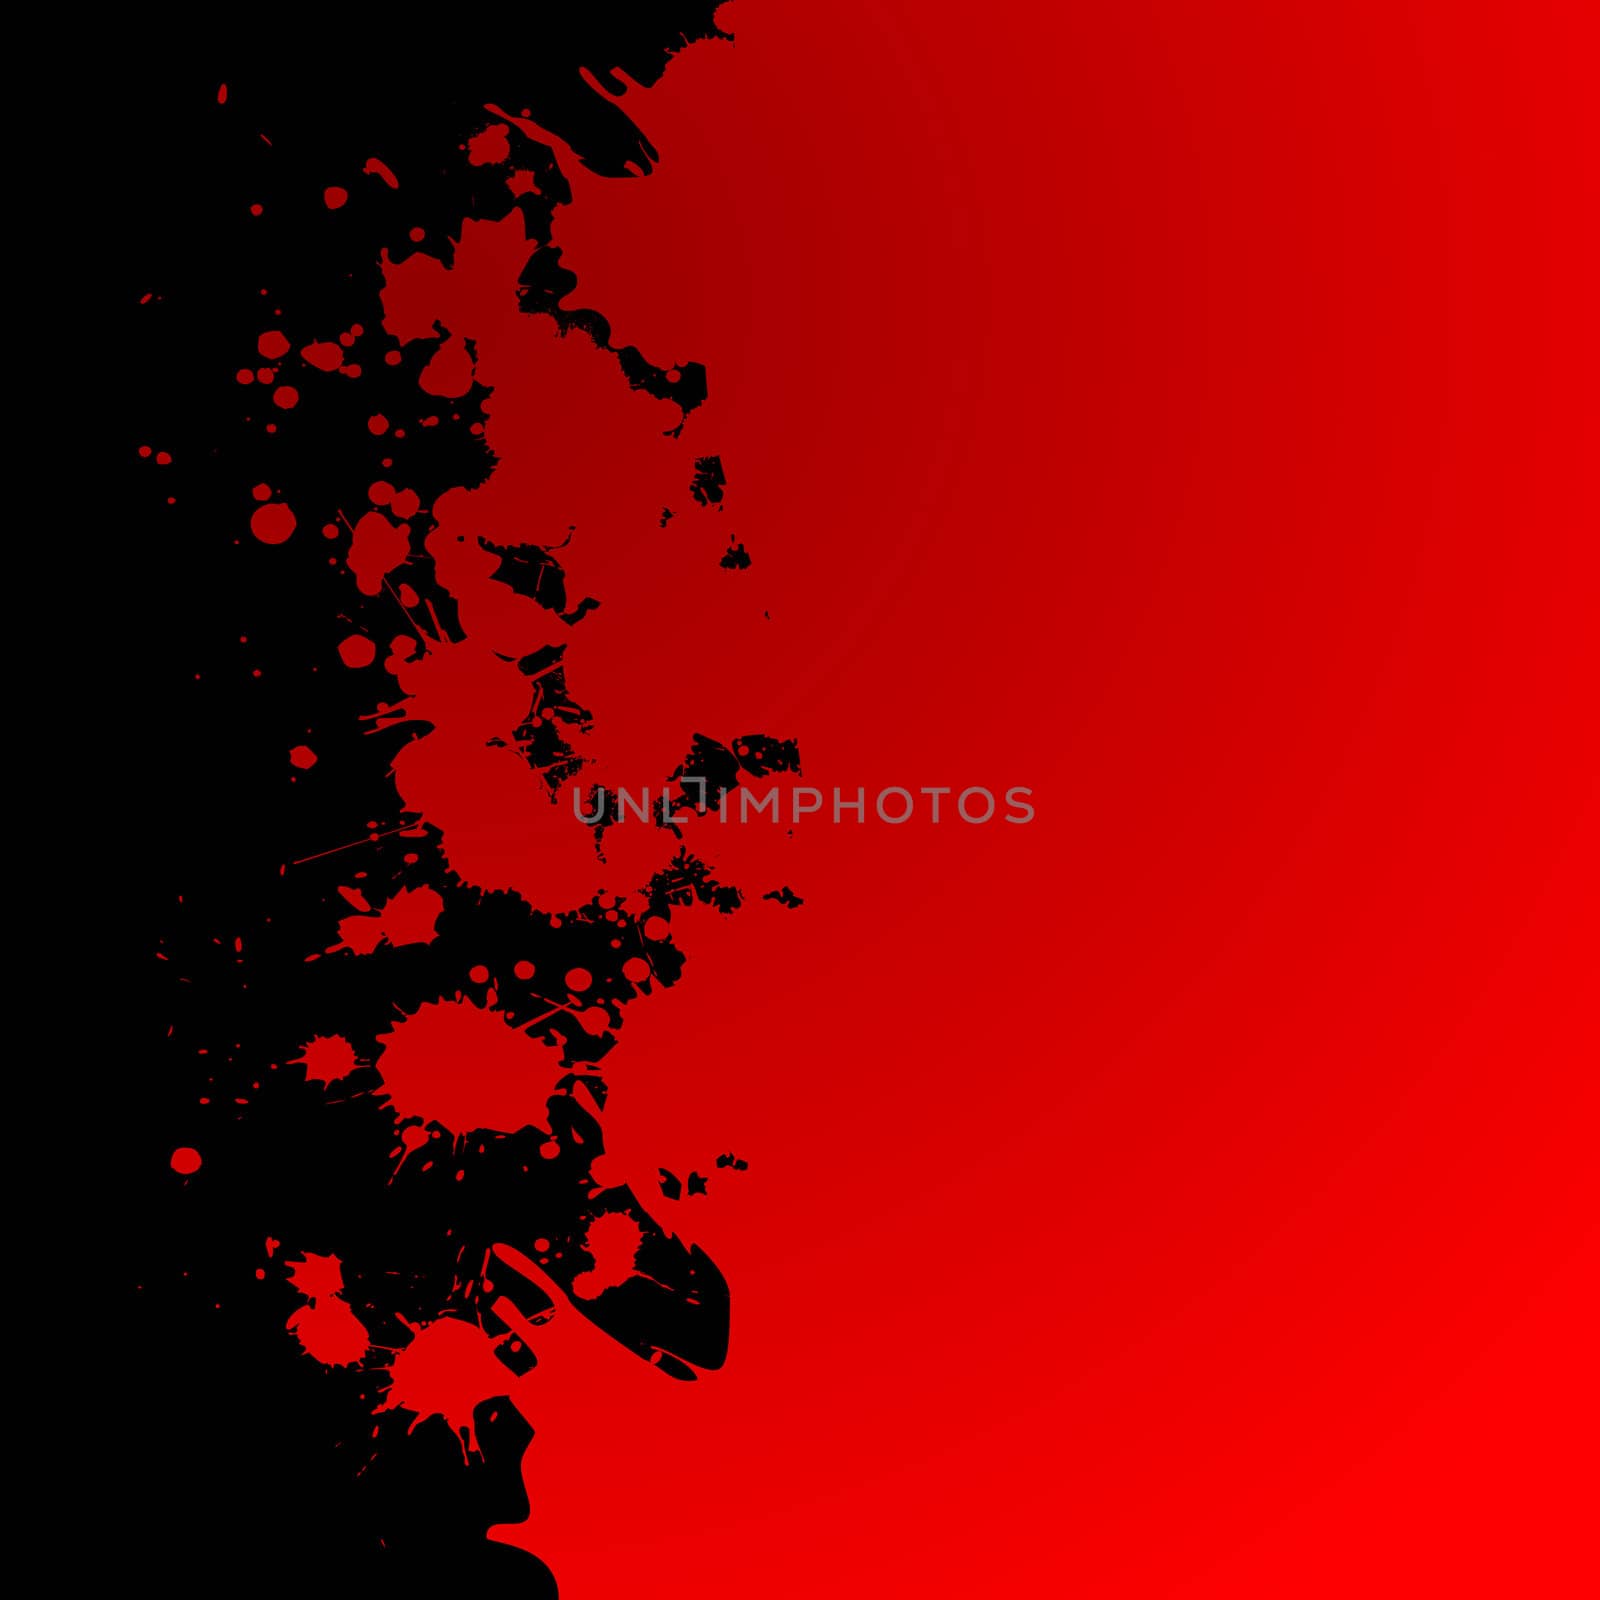 Blood Spots by Lirch